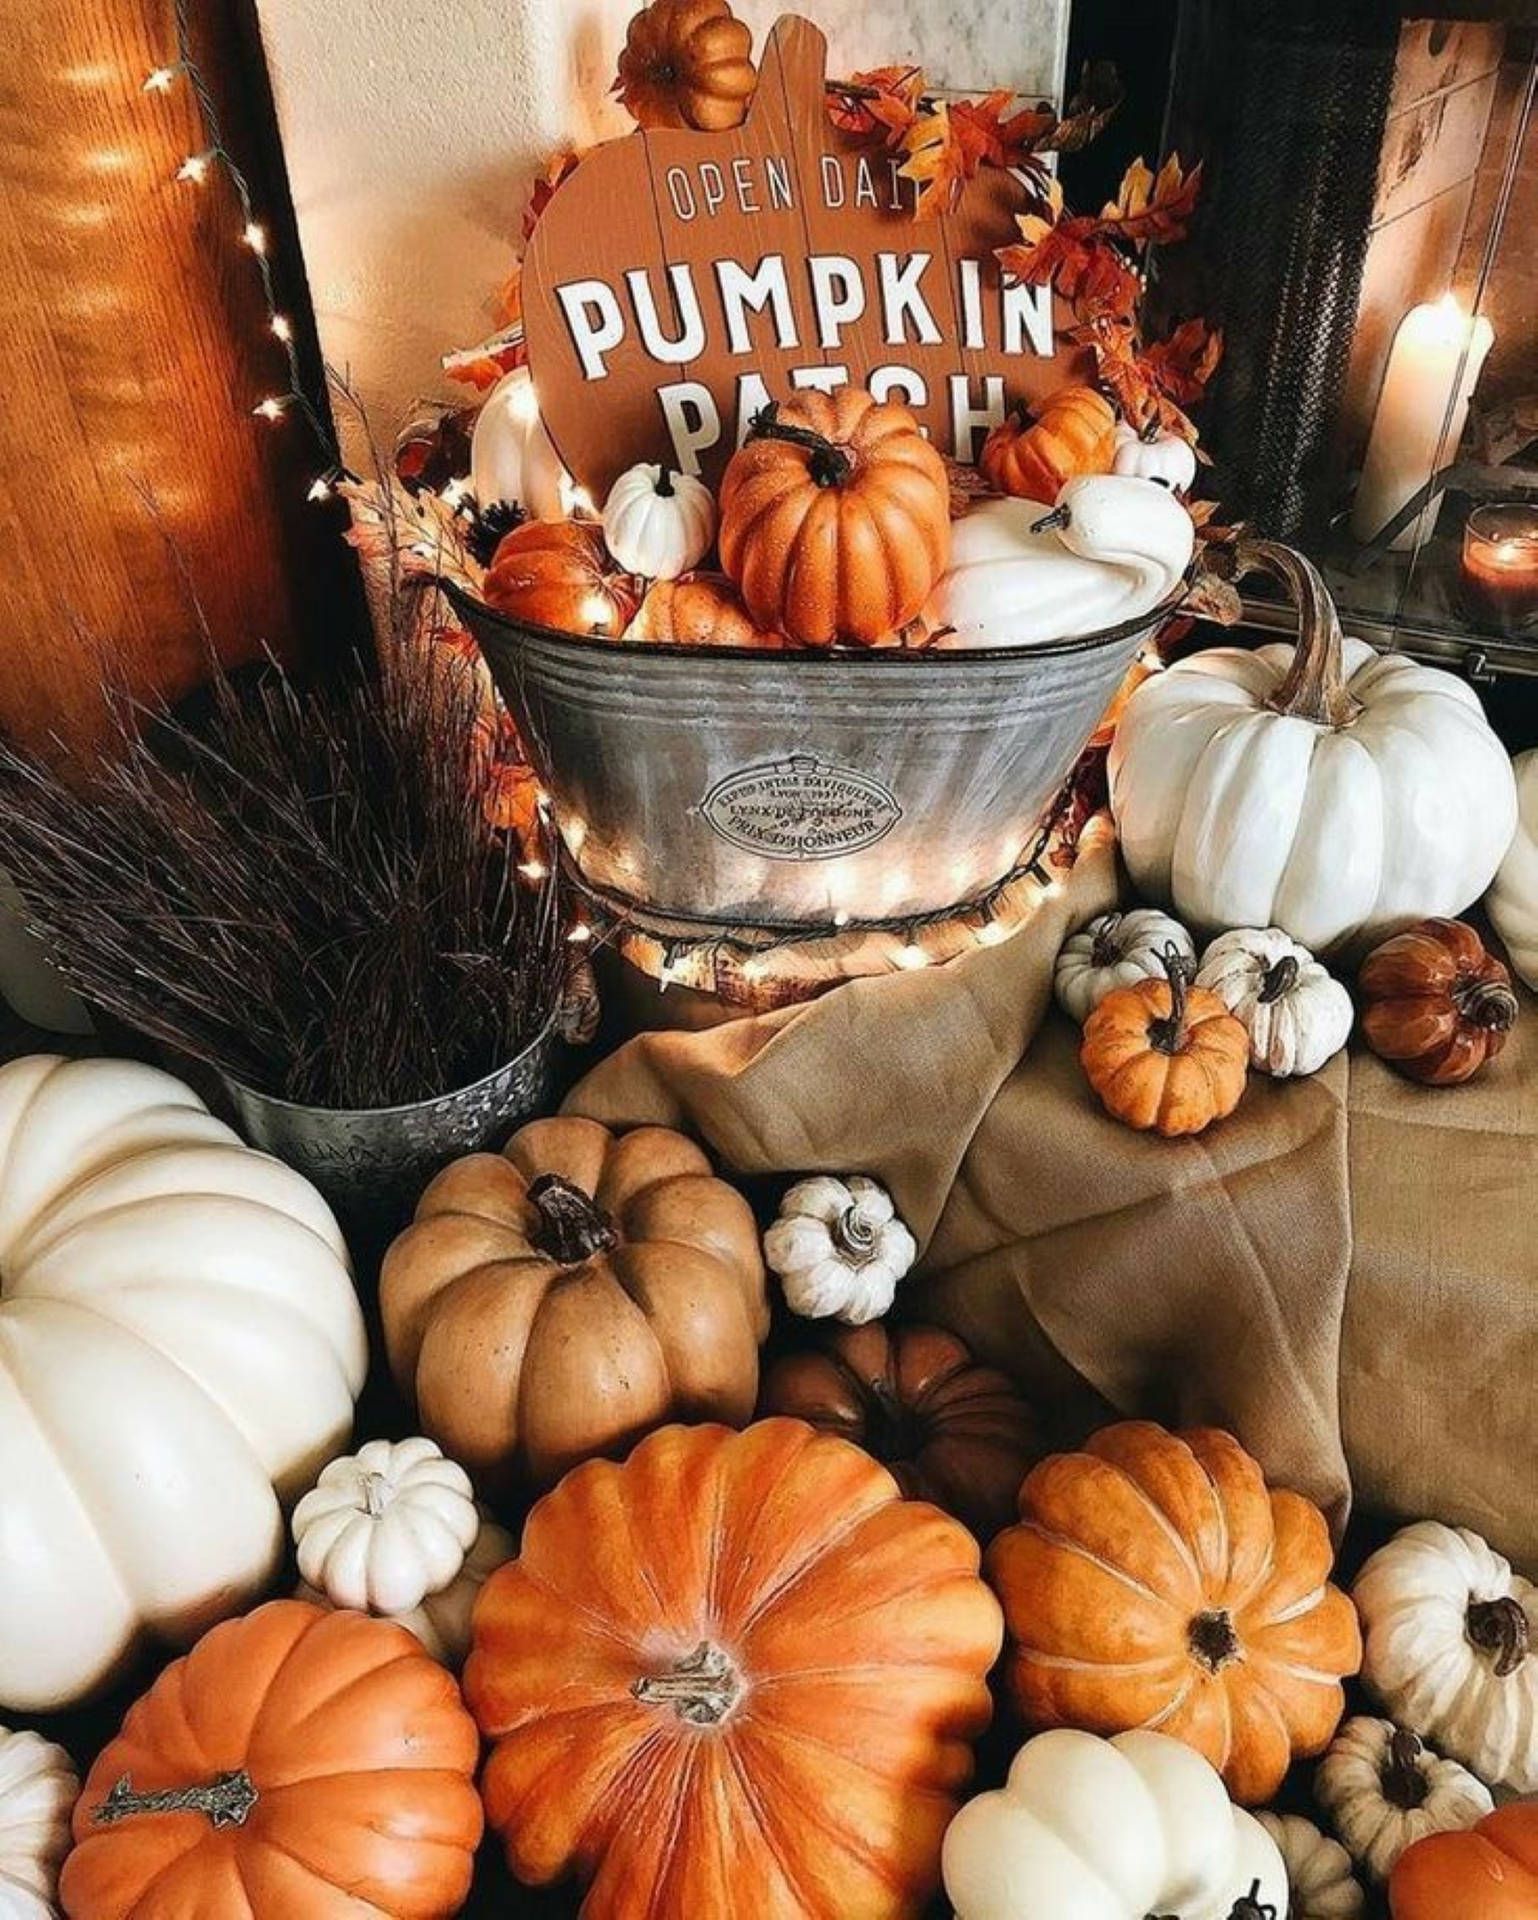 A bucket of pumpkins and other fall decorations - Pumpkin, Halloween